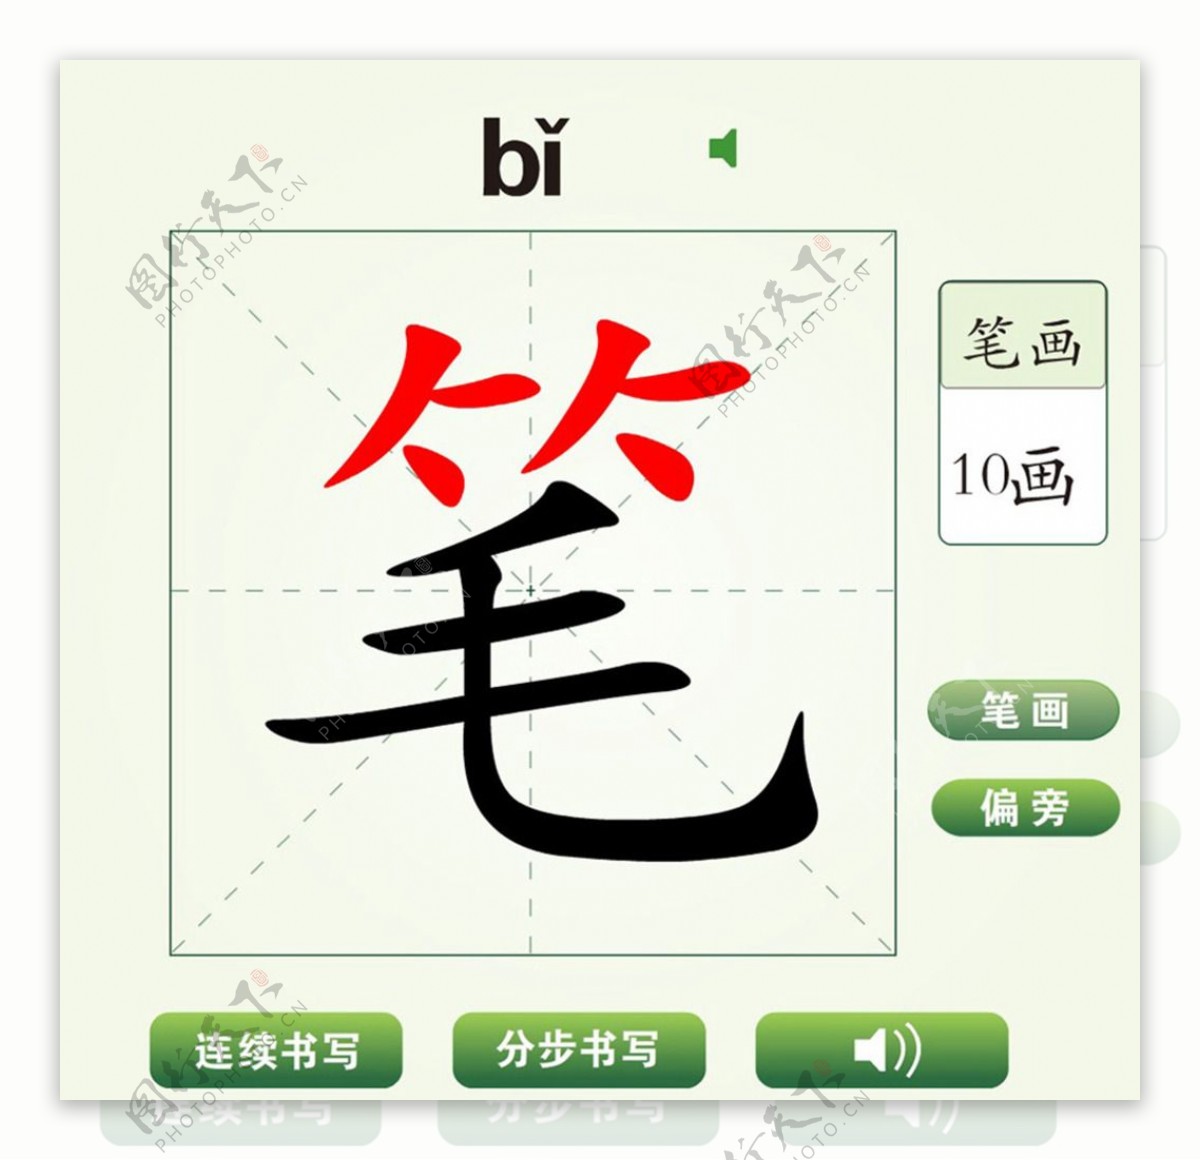 中国汉字笔字笔画教学动画视频